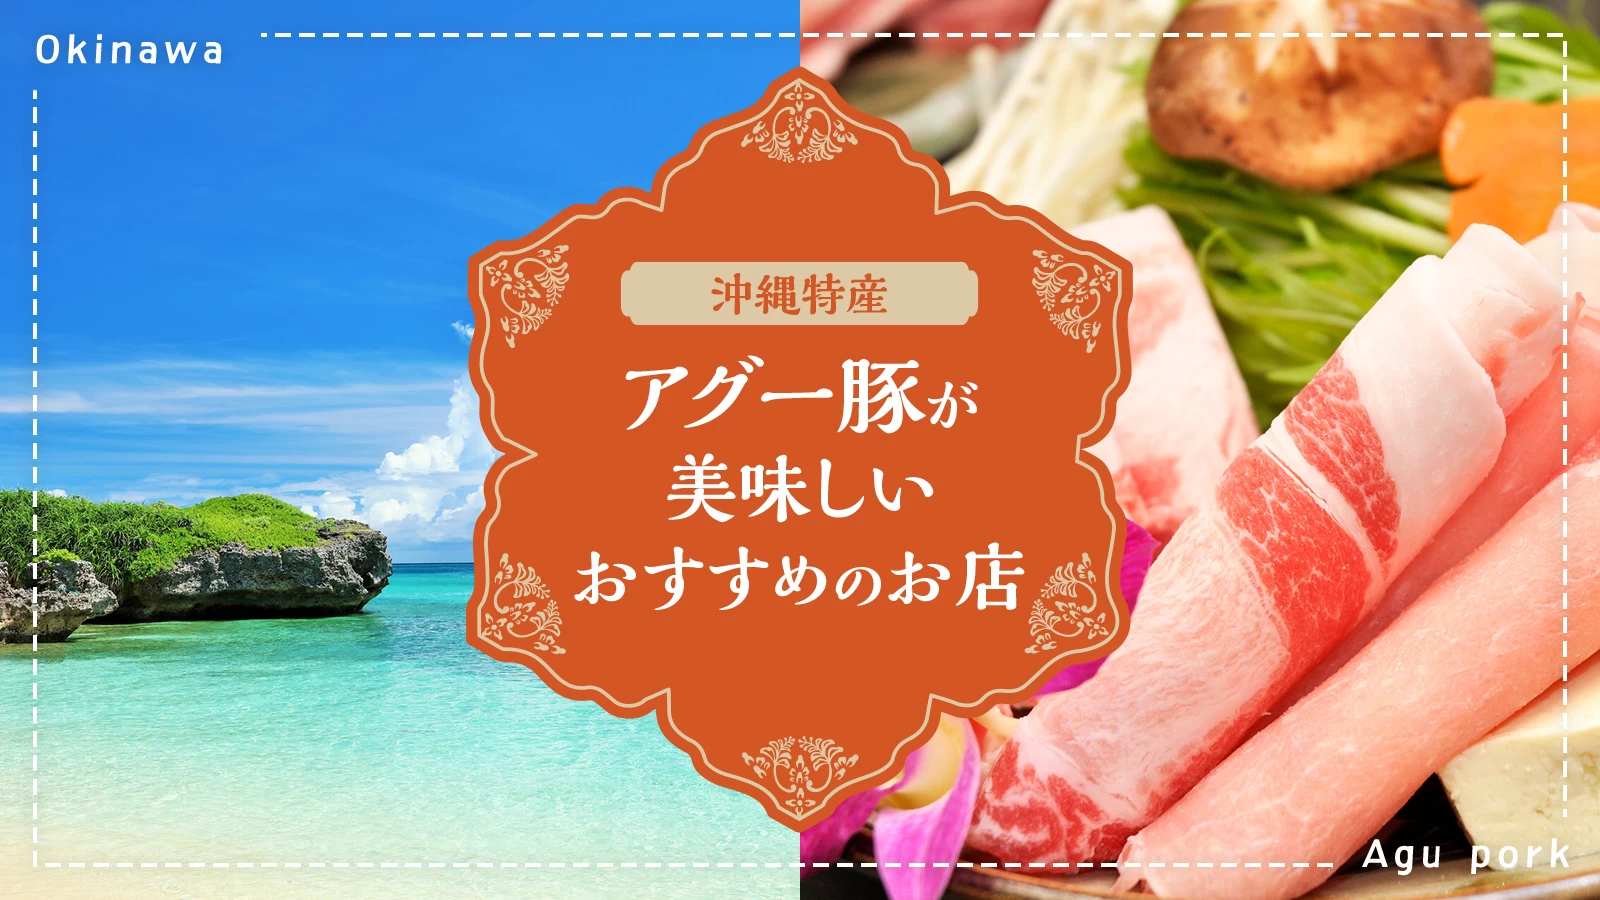 【厳選】沖縄特産のアグー豚が美味しいおすすめのお店11選